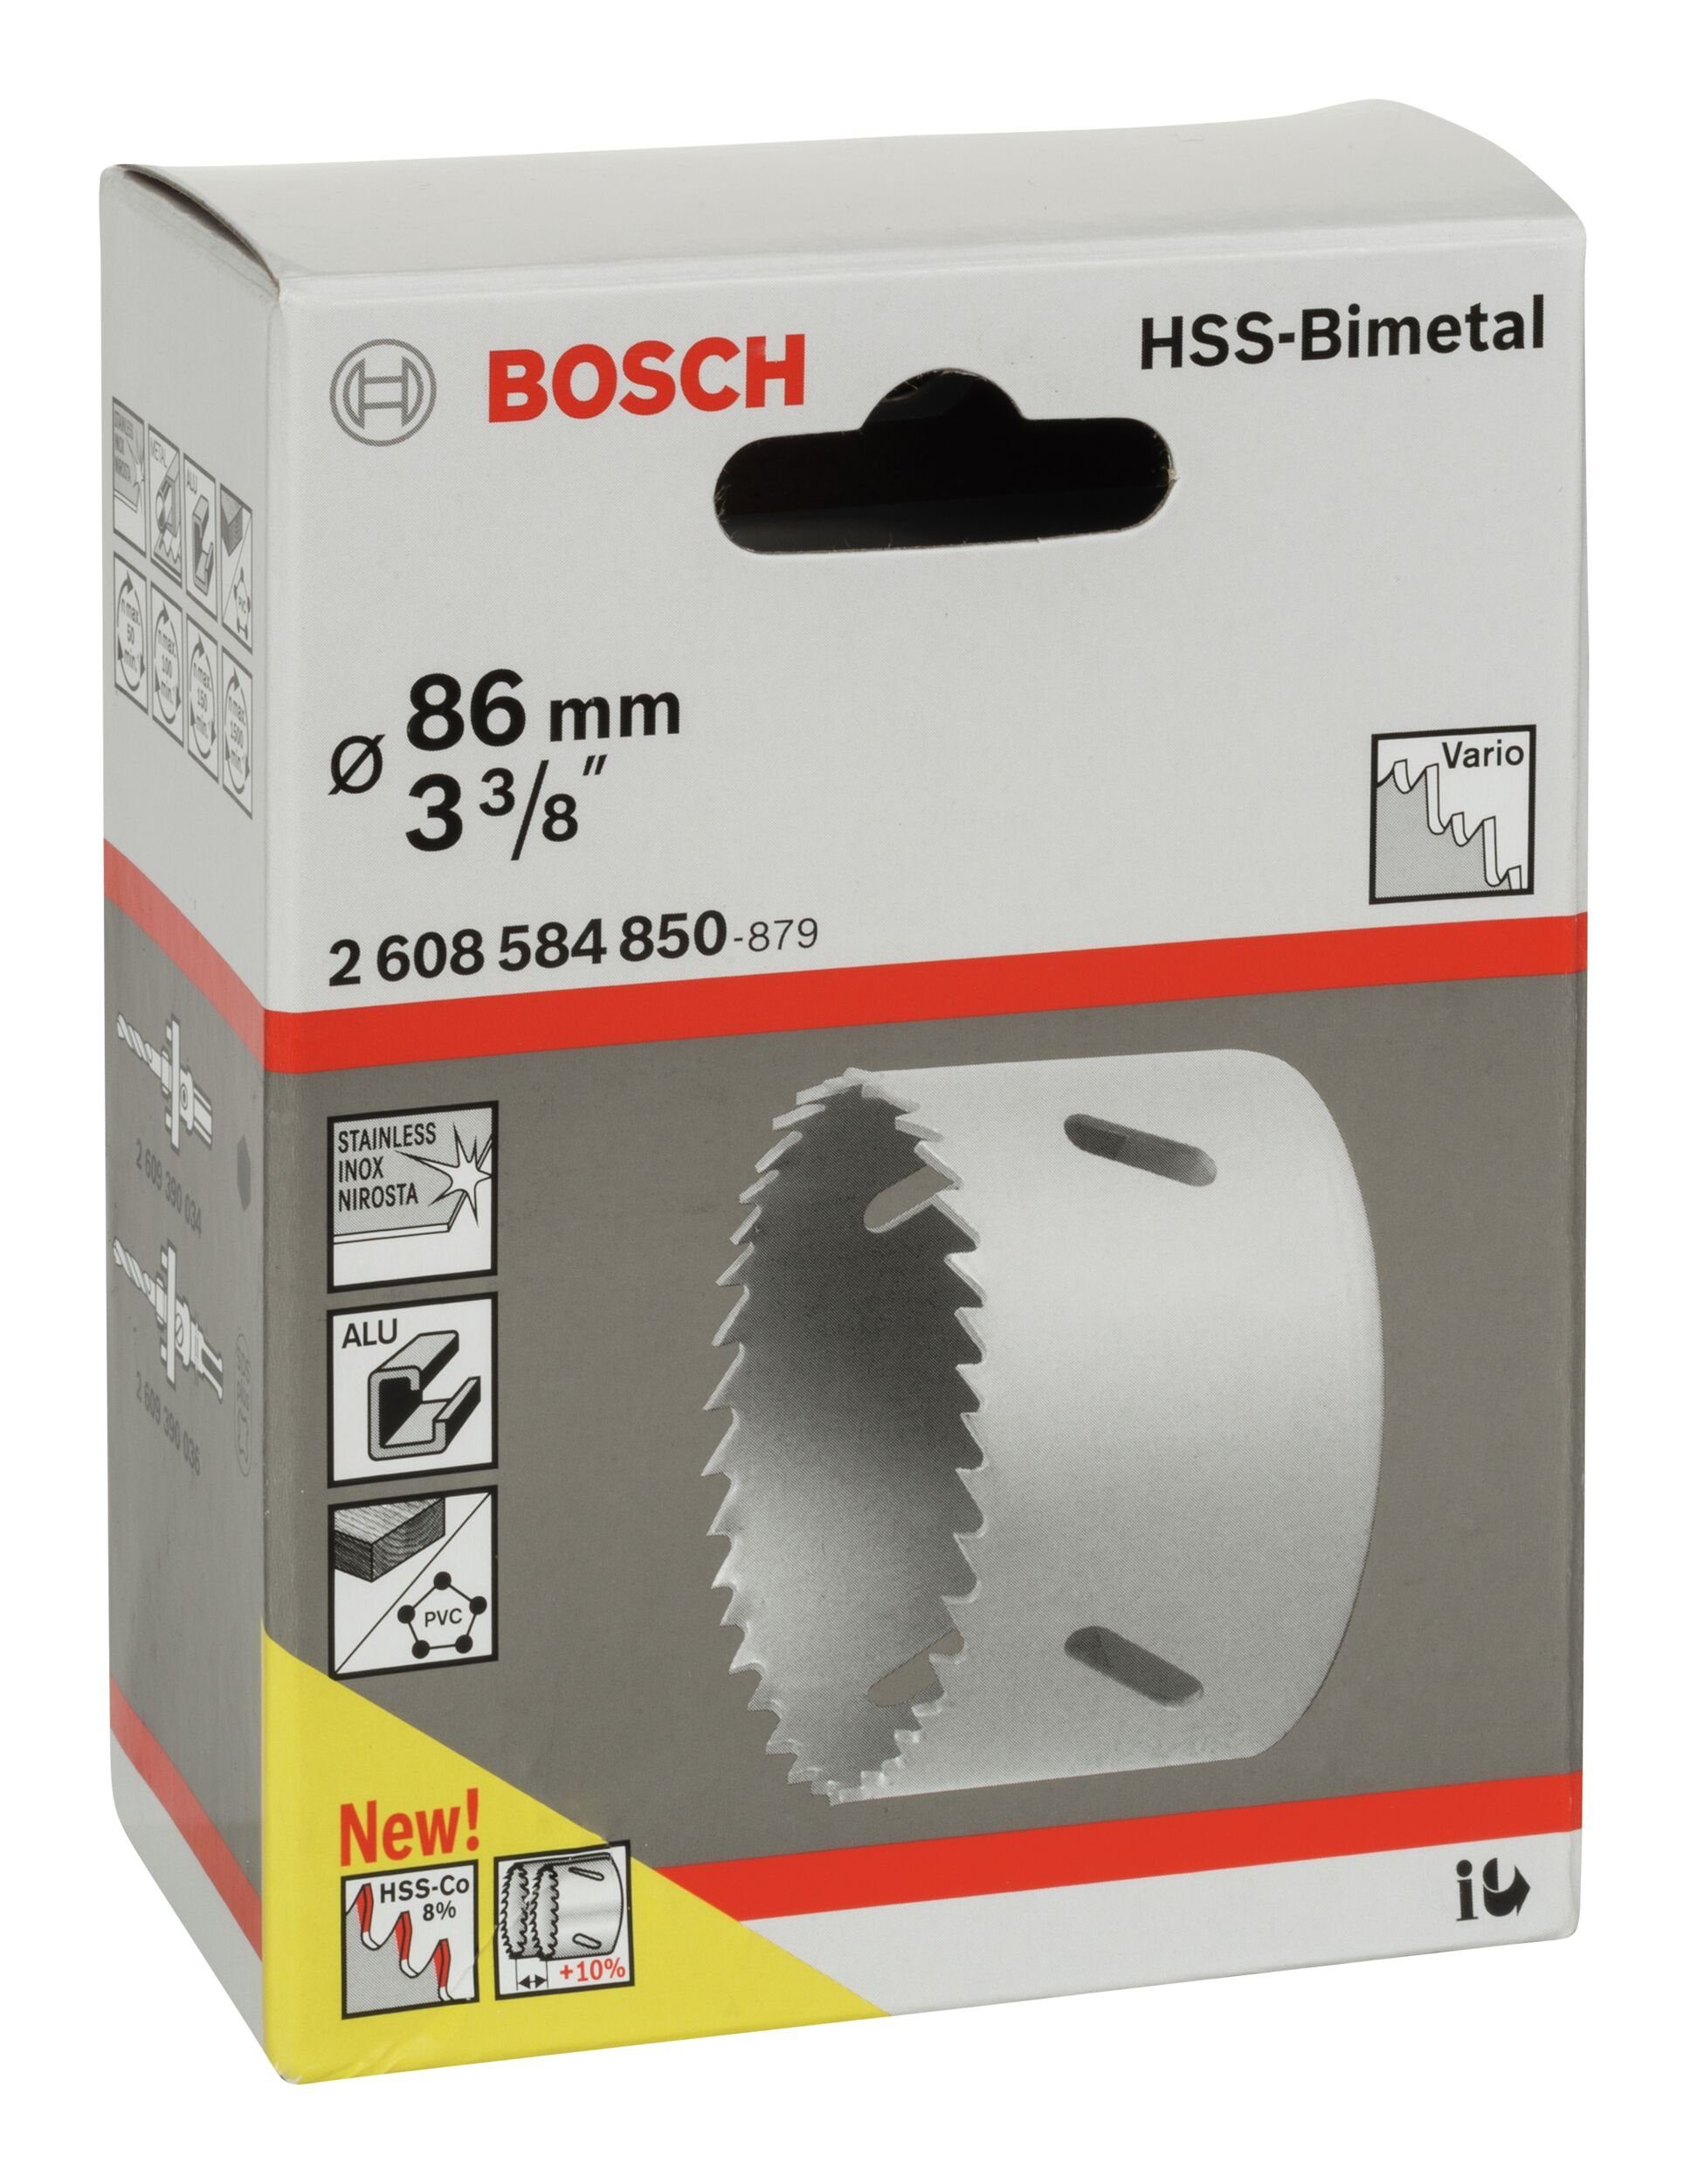 für 86 - Standardadapter BOSCH mm, 3/8" 3 HSS-Bimetall / Ø Lochsäge,